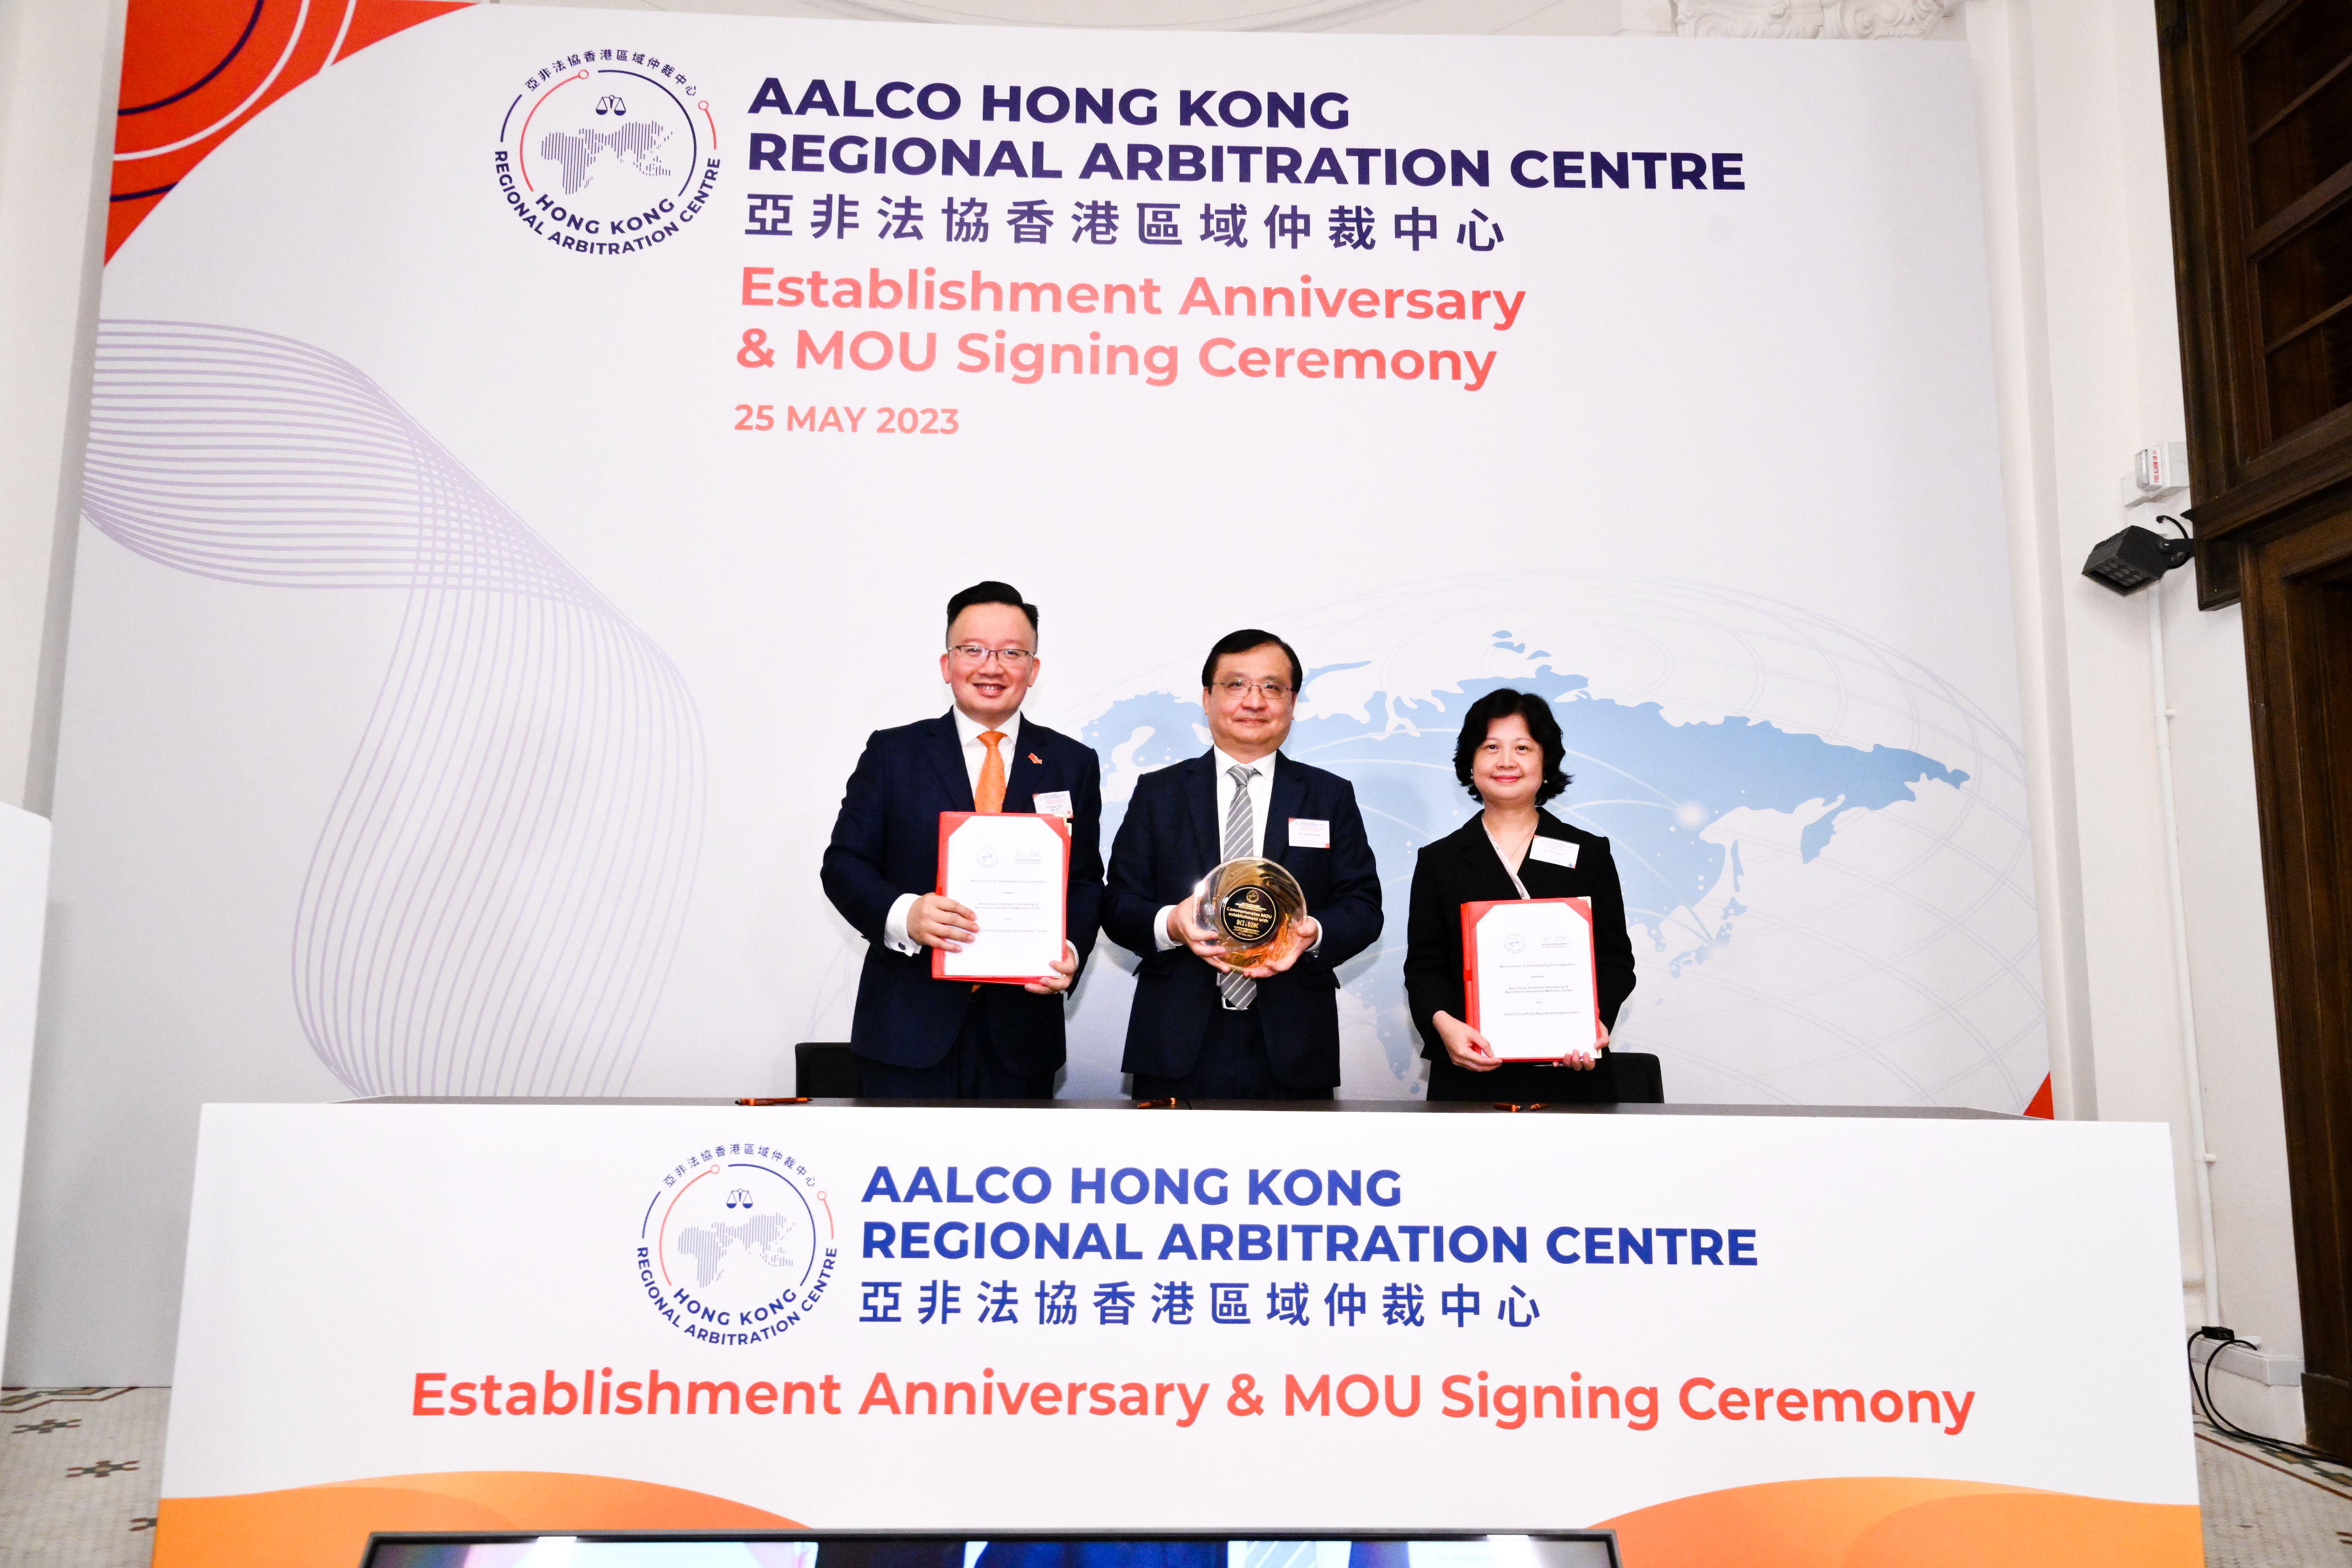 藍海中心與亞非法協香港區域仲裁中心簽署合作備忘錄